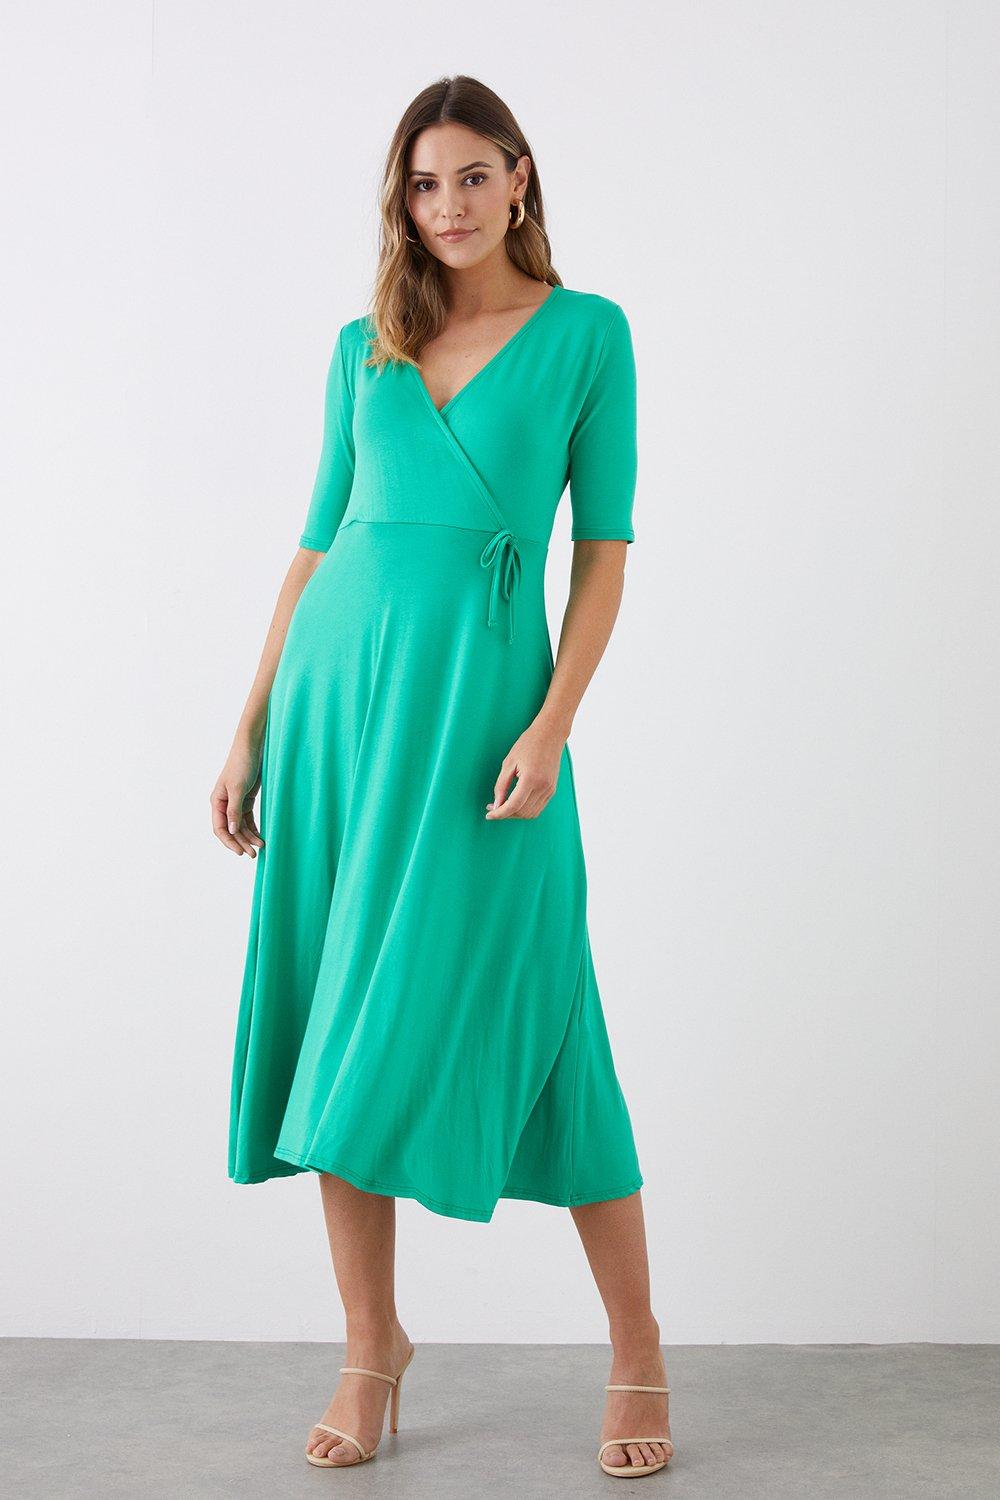 Women’s Tall Green Short Sleeve Jersey Wrap Dress - 14